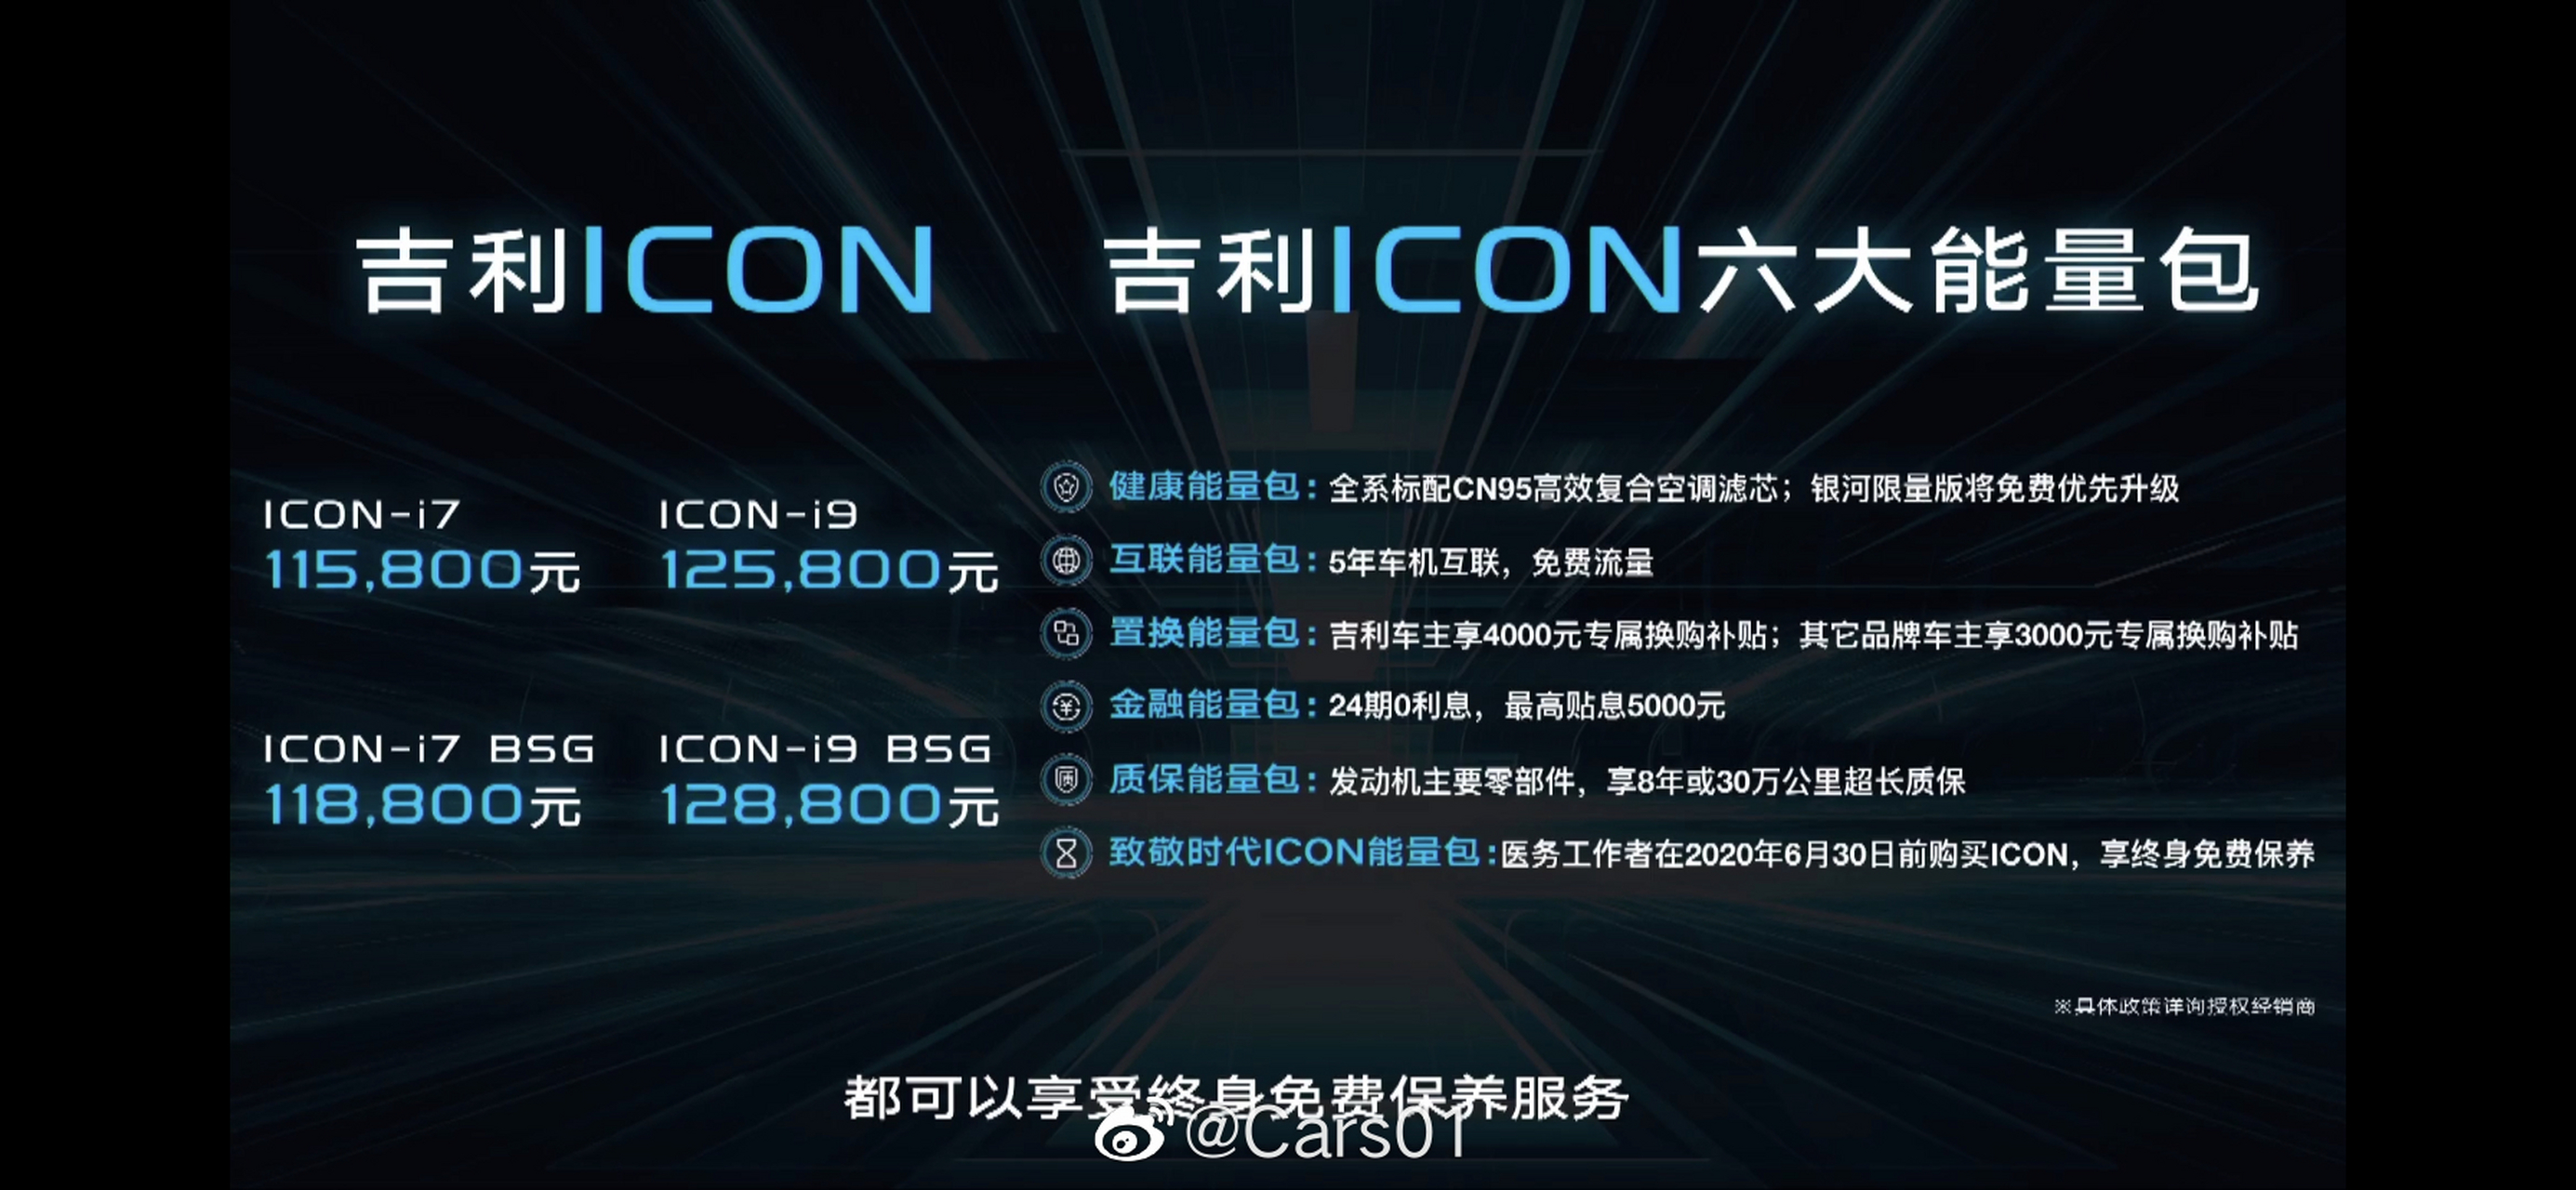 刚刚结束的吉利线上直播发布会,正式发布了icon车型,全系标配cn95空调